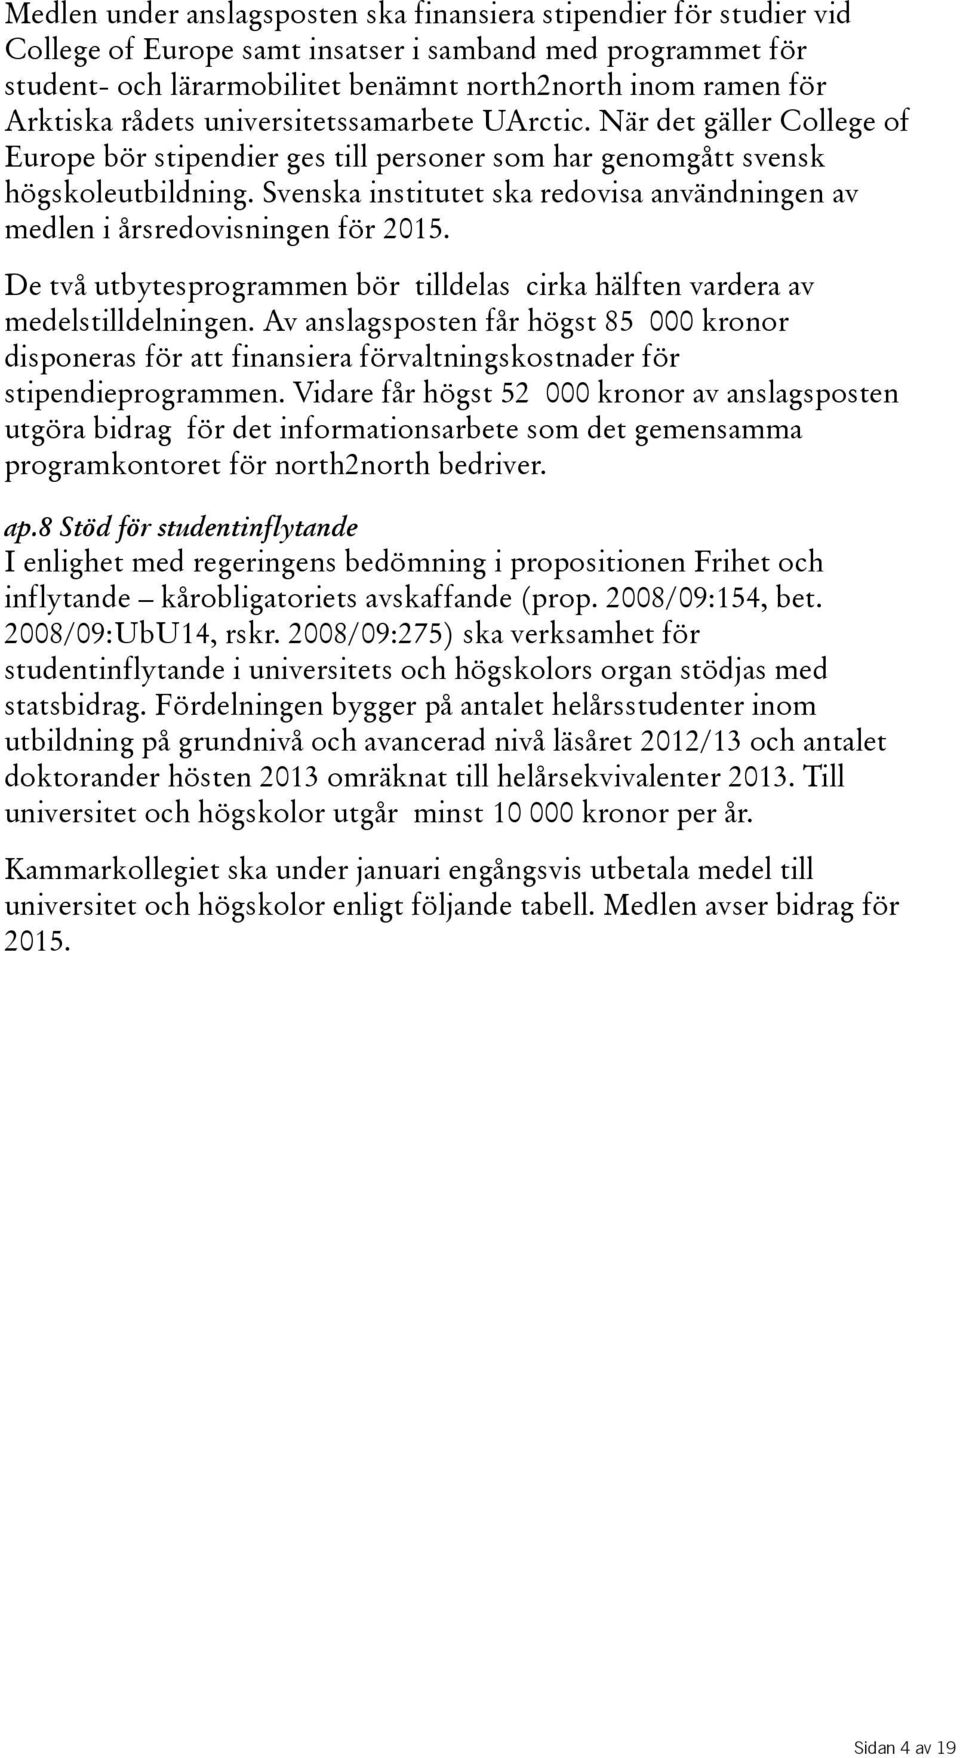 Svenska institutet ska redovisa användningen av medlen i årsredovisningen för 2015. De två utbytesprogrammen bör tilldelas cirka hälften vardera av medelstilldelningen.